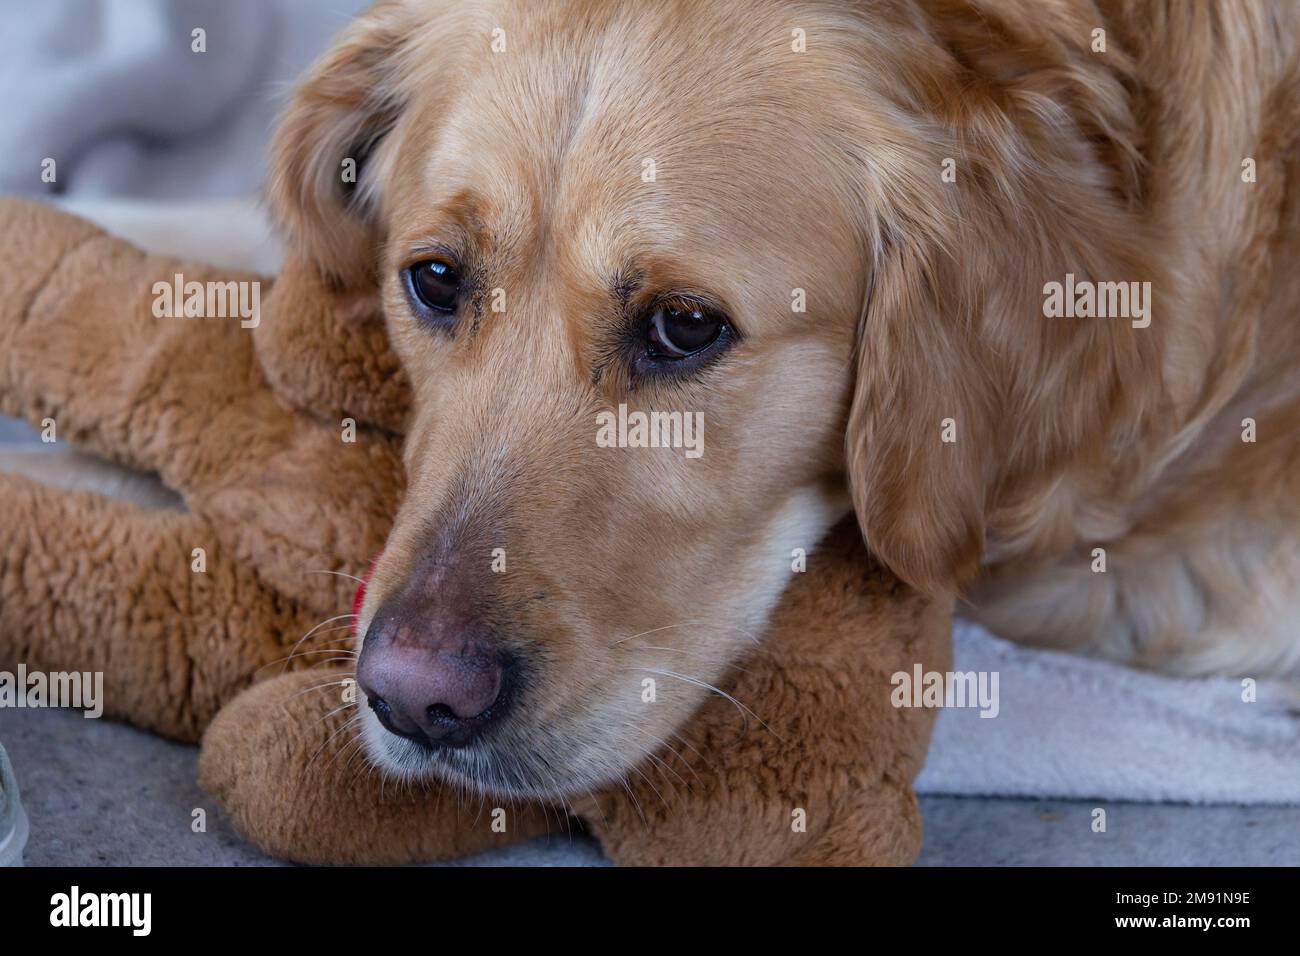 A golden retriever with a soft teddy bear. Stock Photo